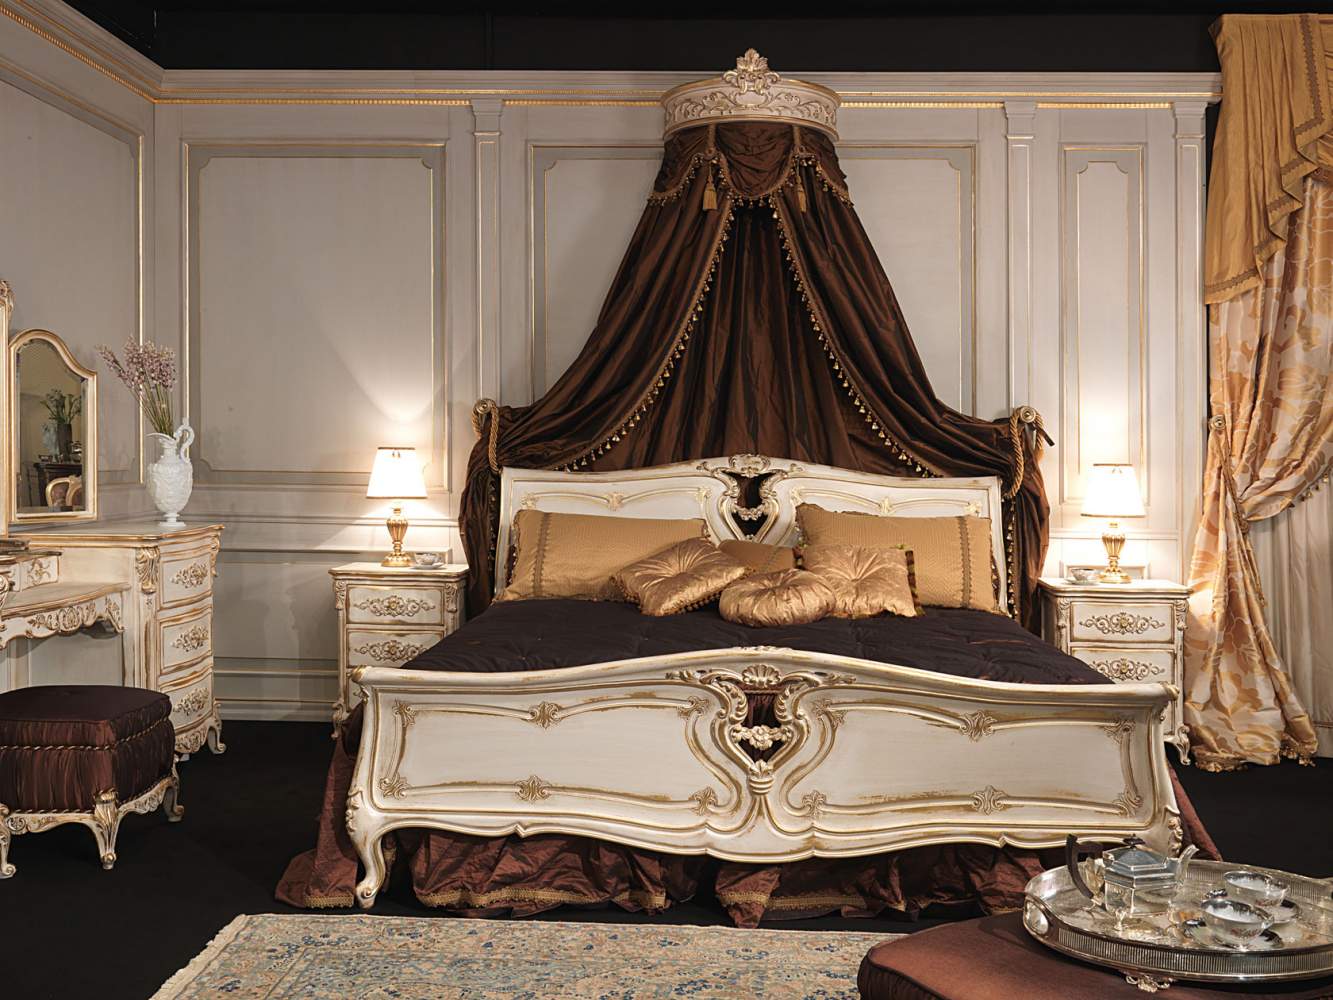 Camera da letto in stile Luigi XVI, letto in legno intagliato con baldacchino a parete, comodini intagliati